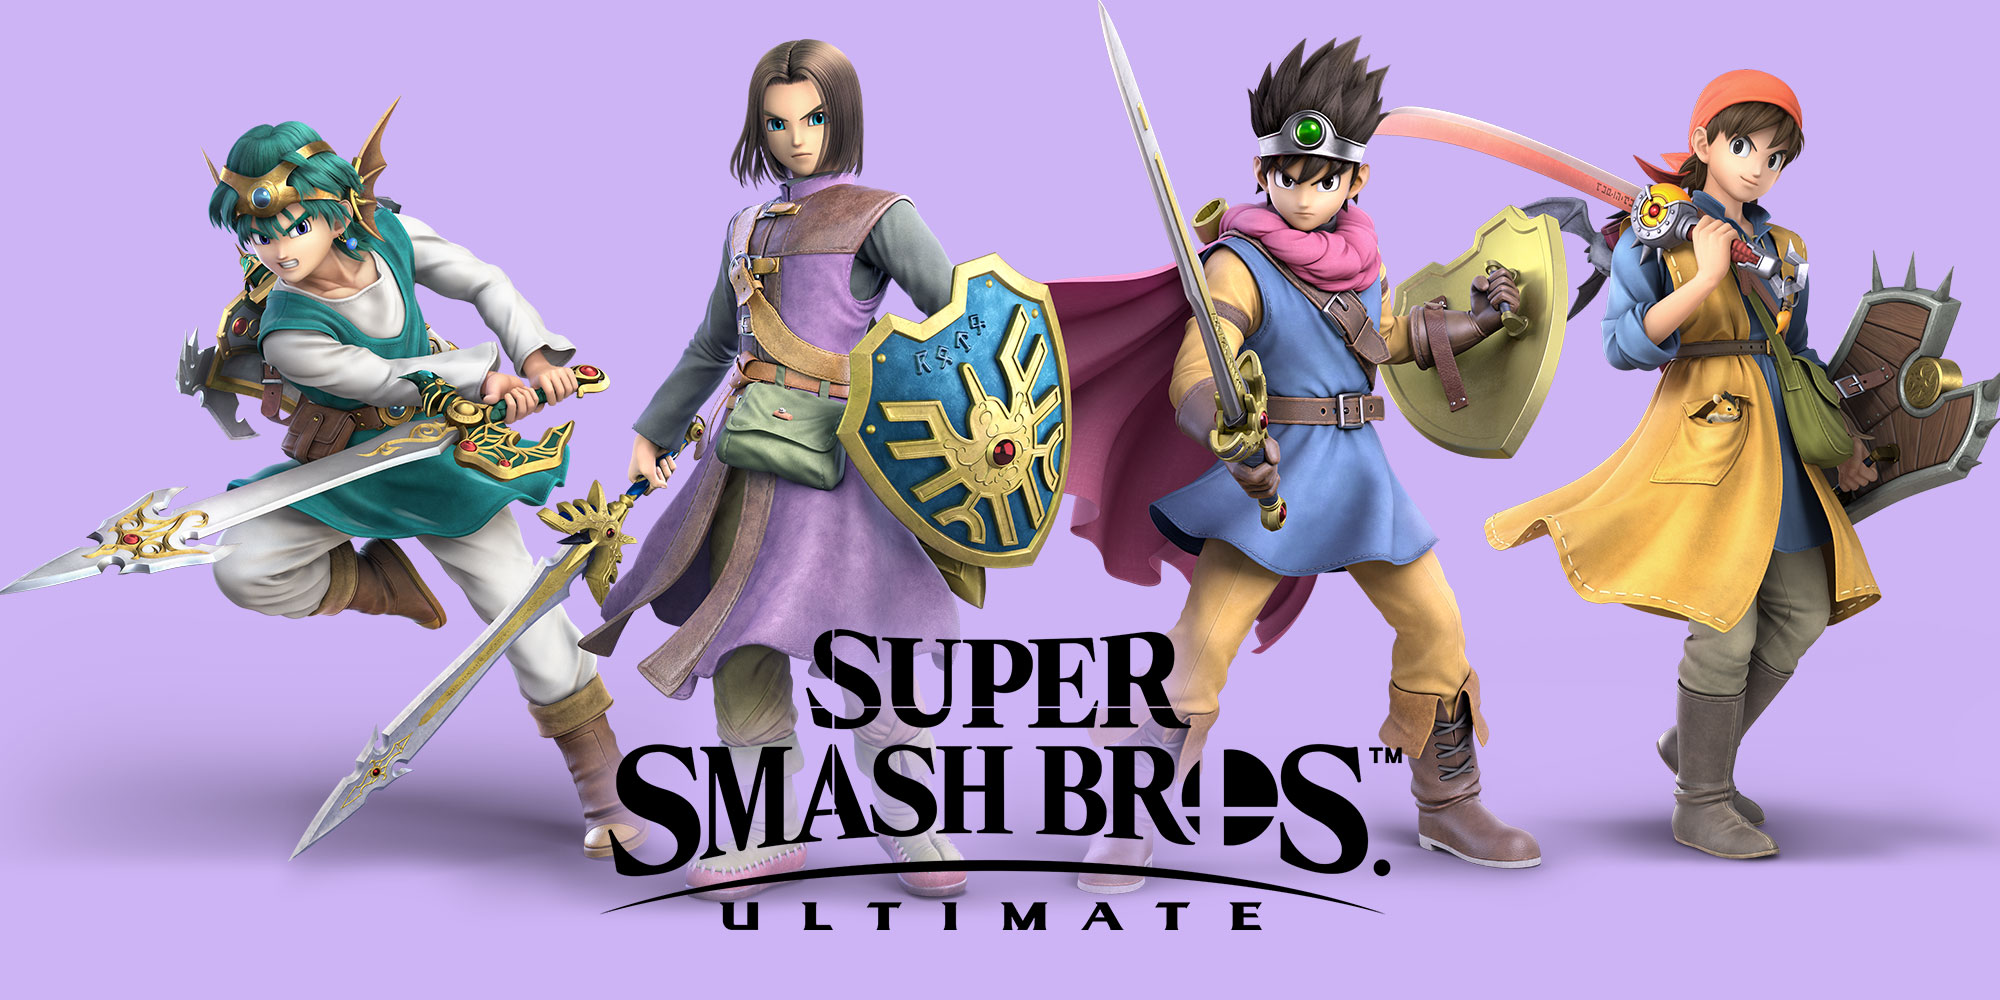 De held uit DRAGON QUEST komt naar Super Smash Bros. Ultimate op 31 juli!